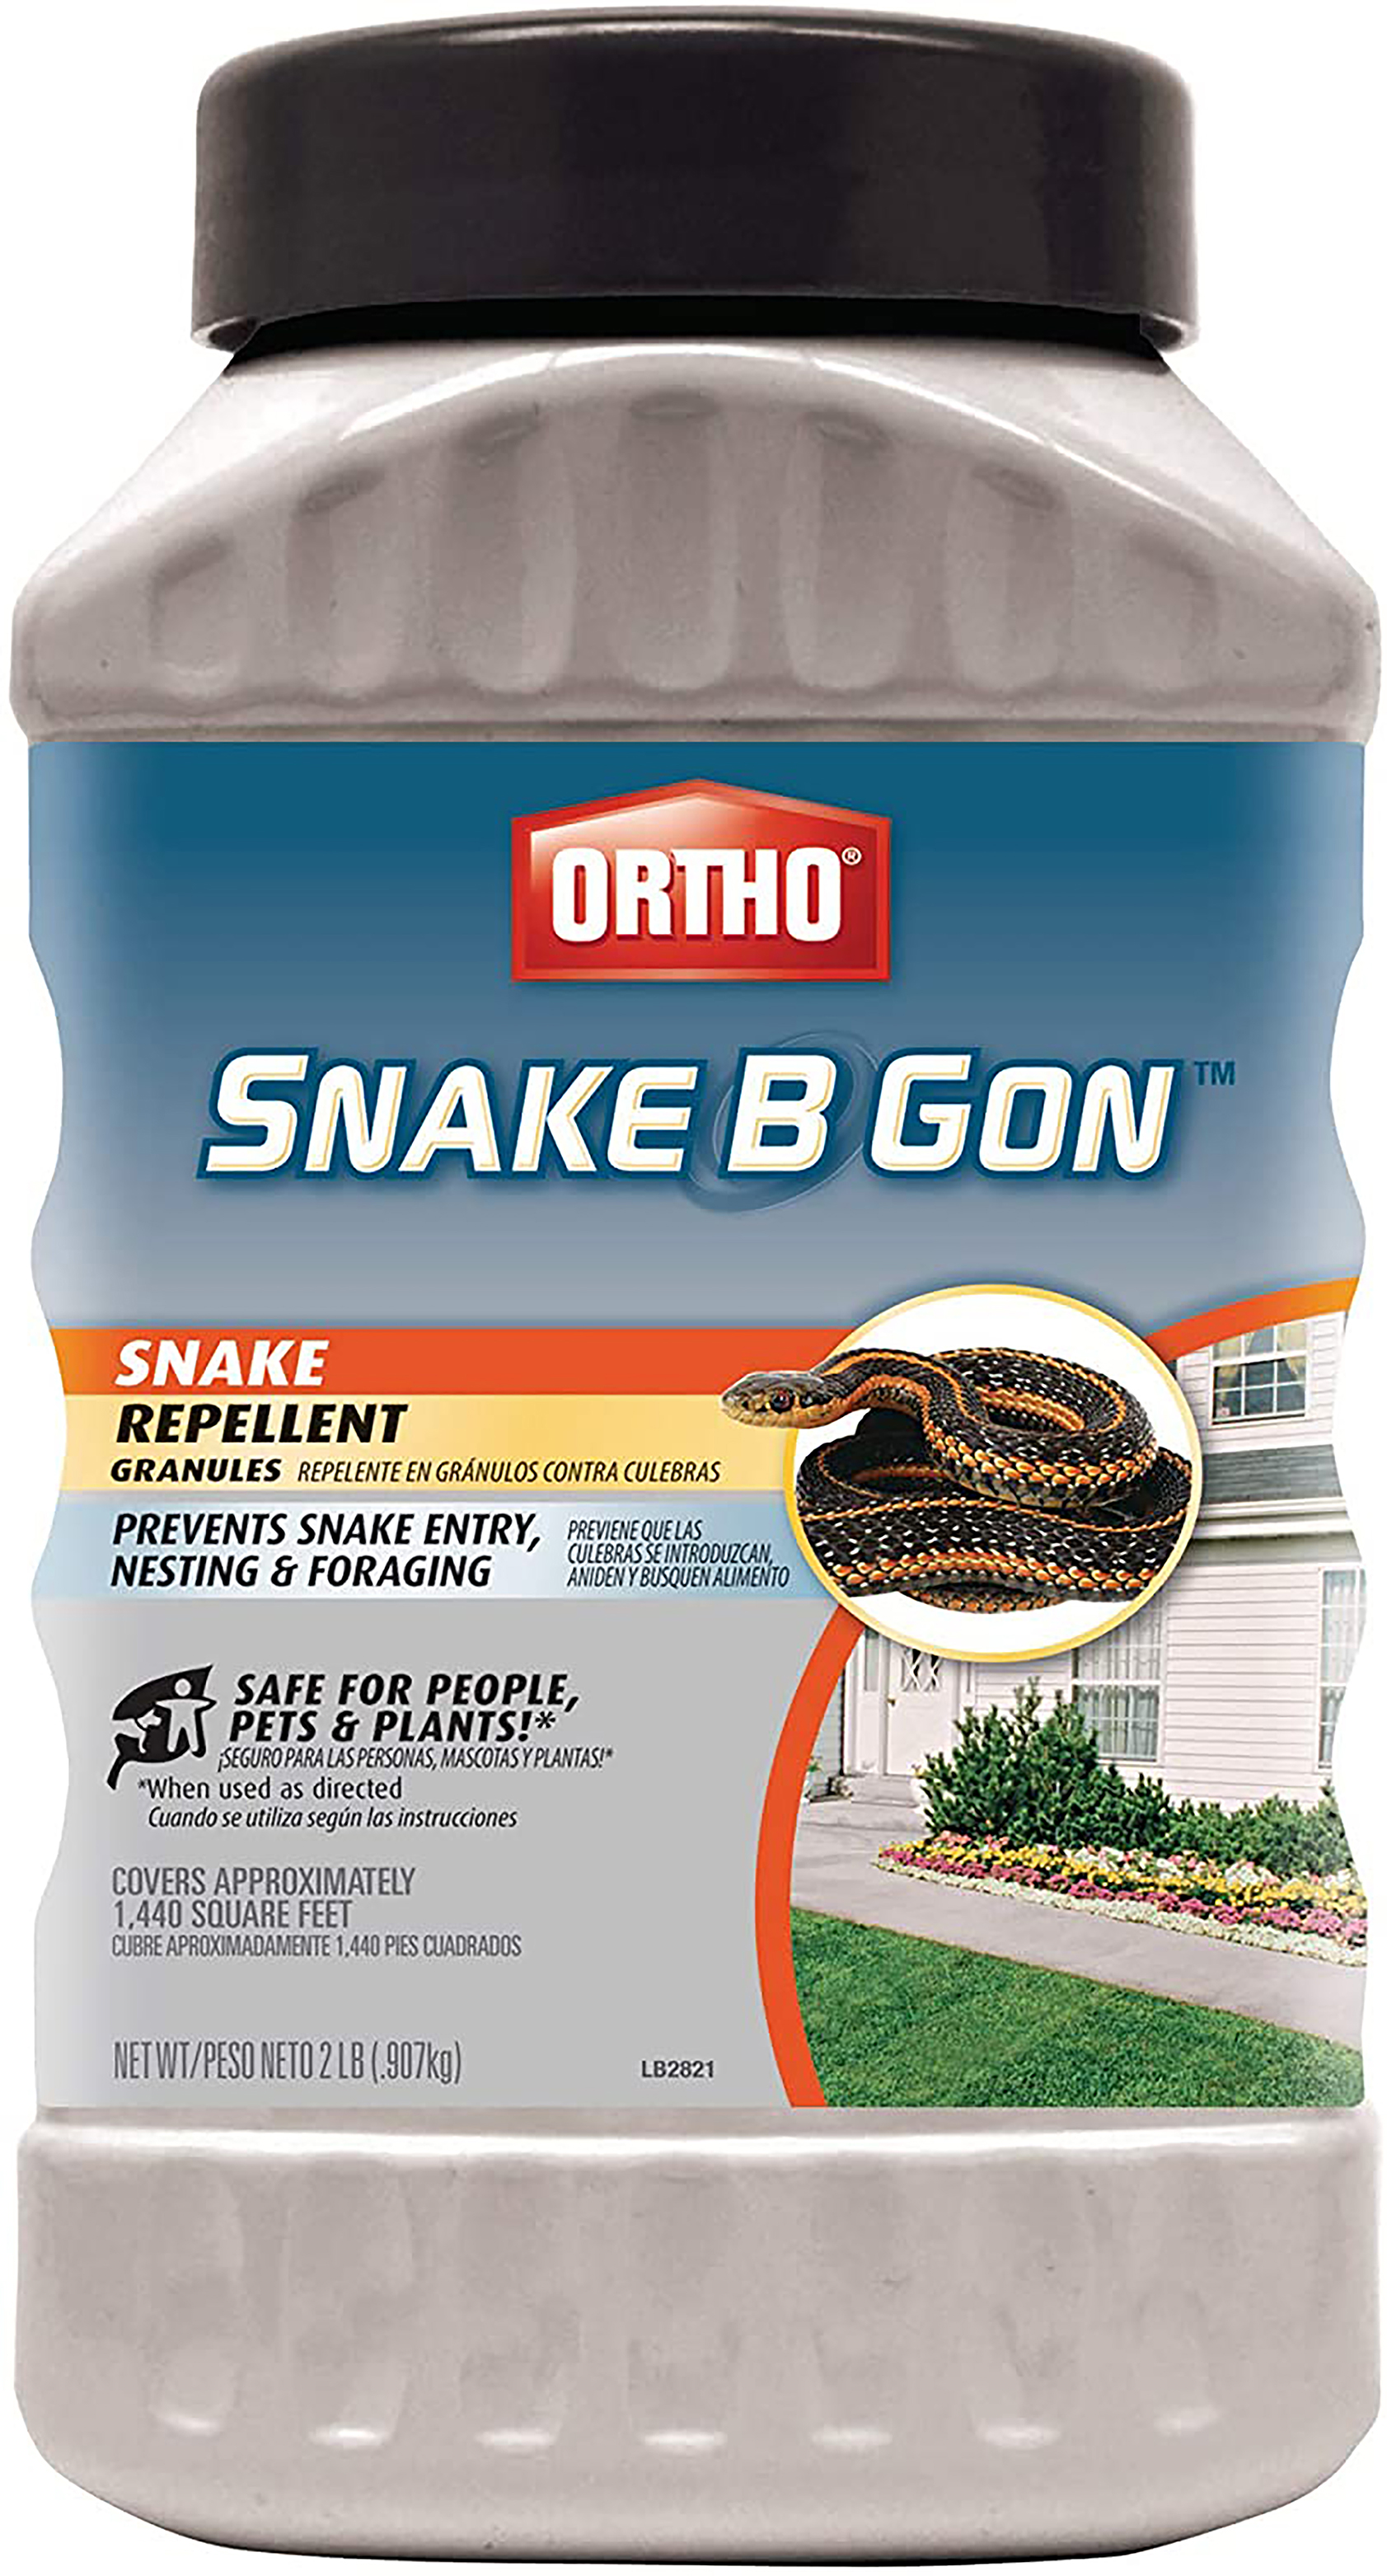 Snake-B-Gon Snake Repellent Granules  review